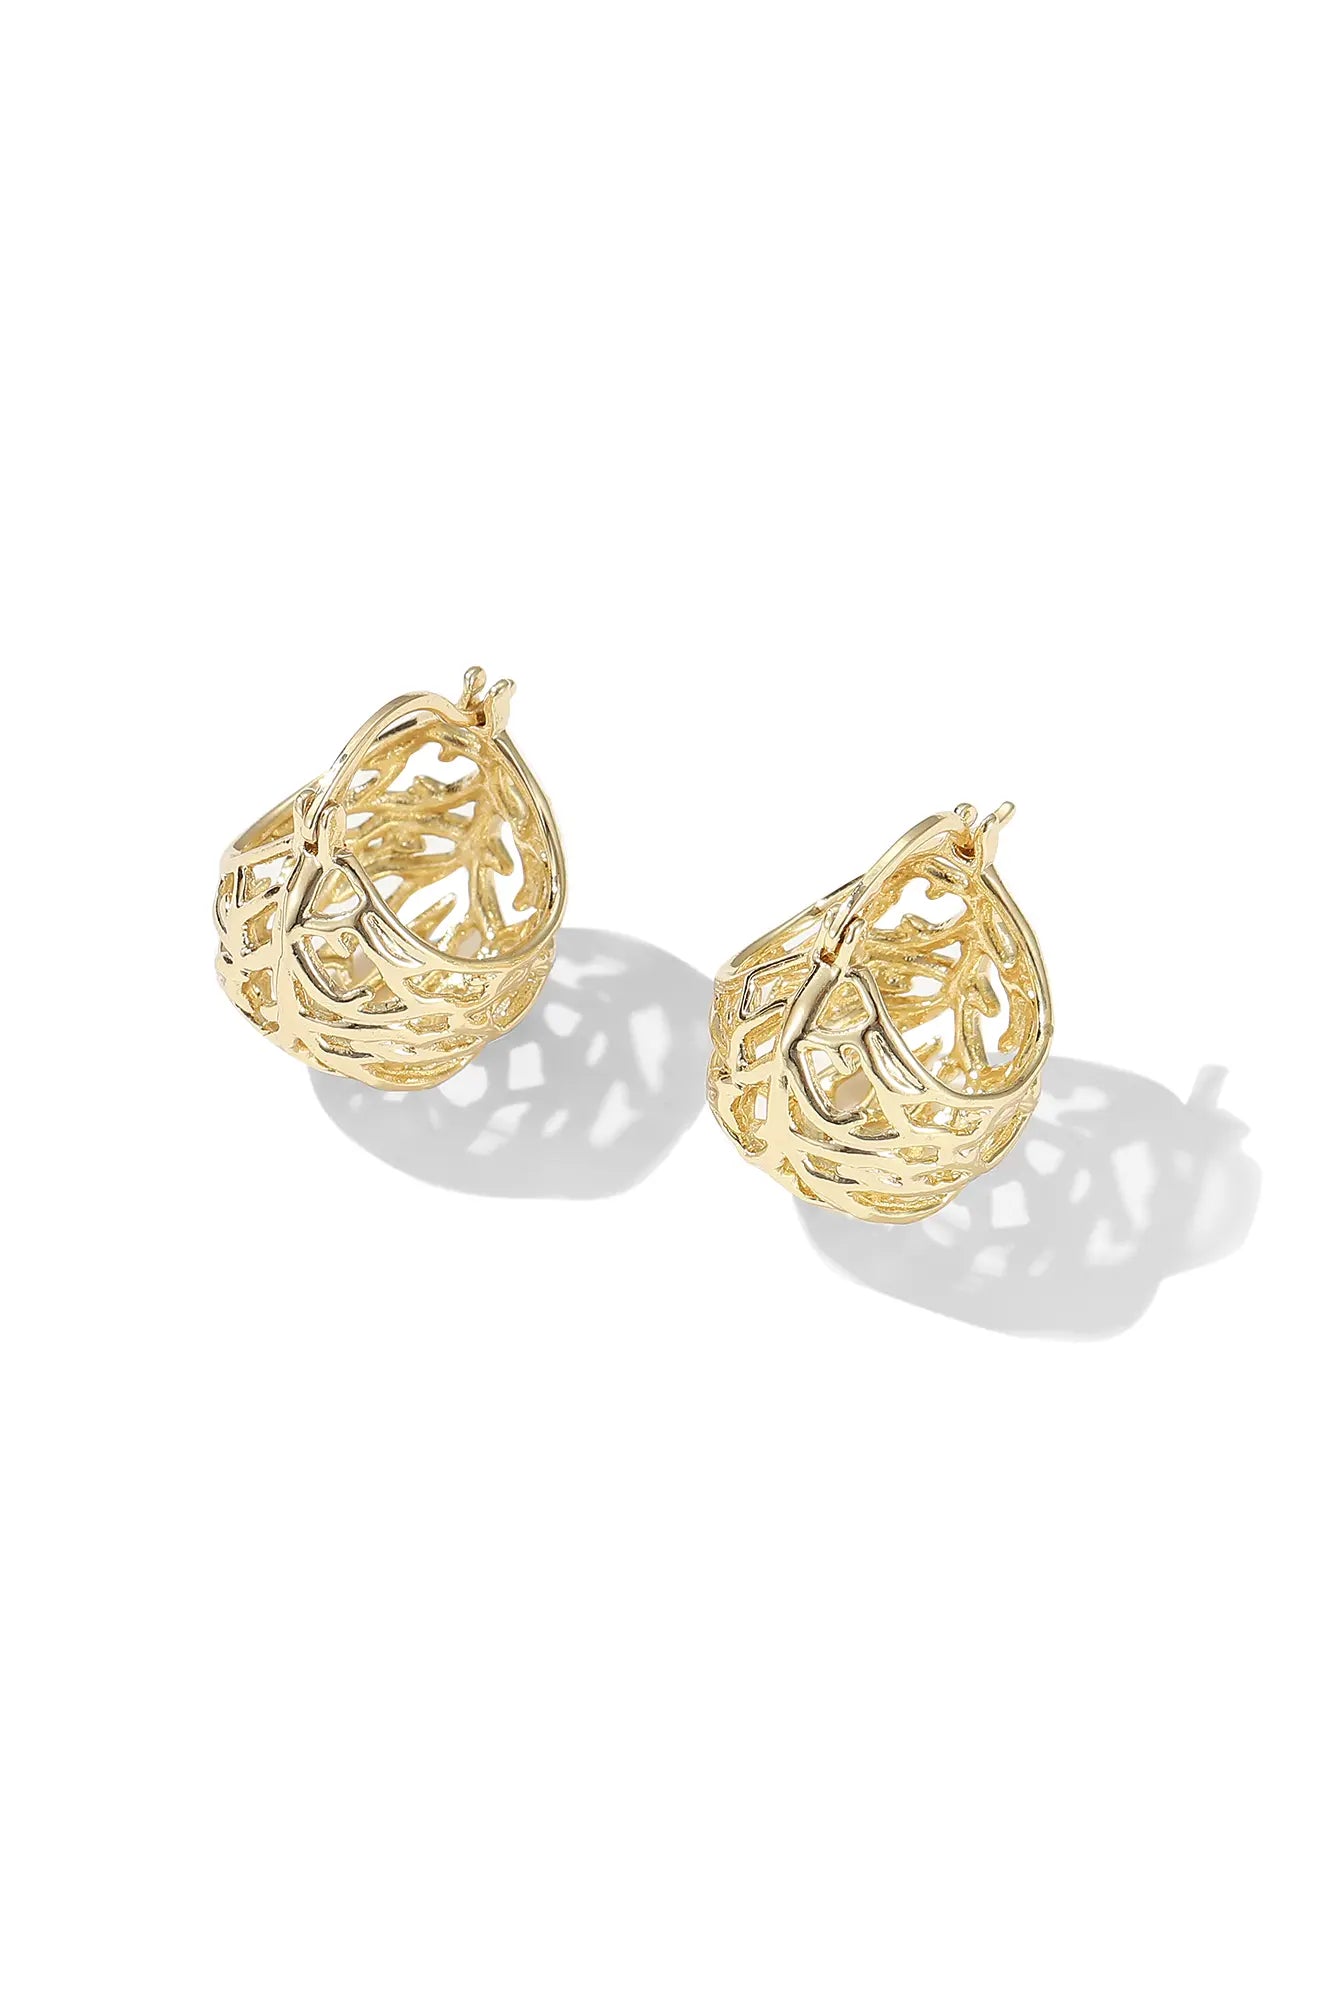 Gold Filigree Ball Earrings